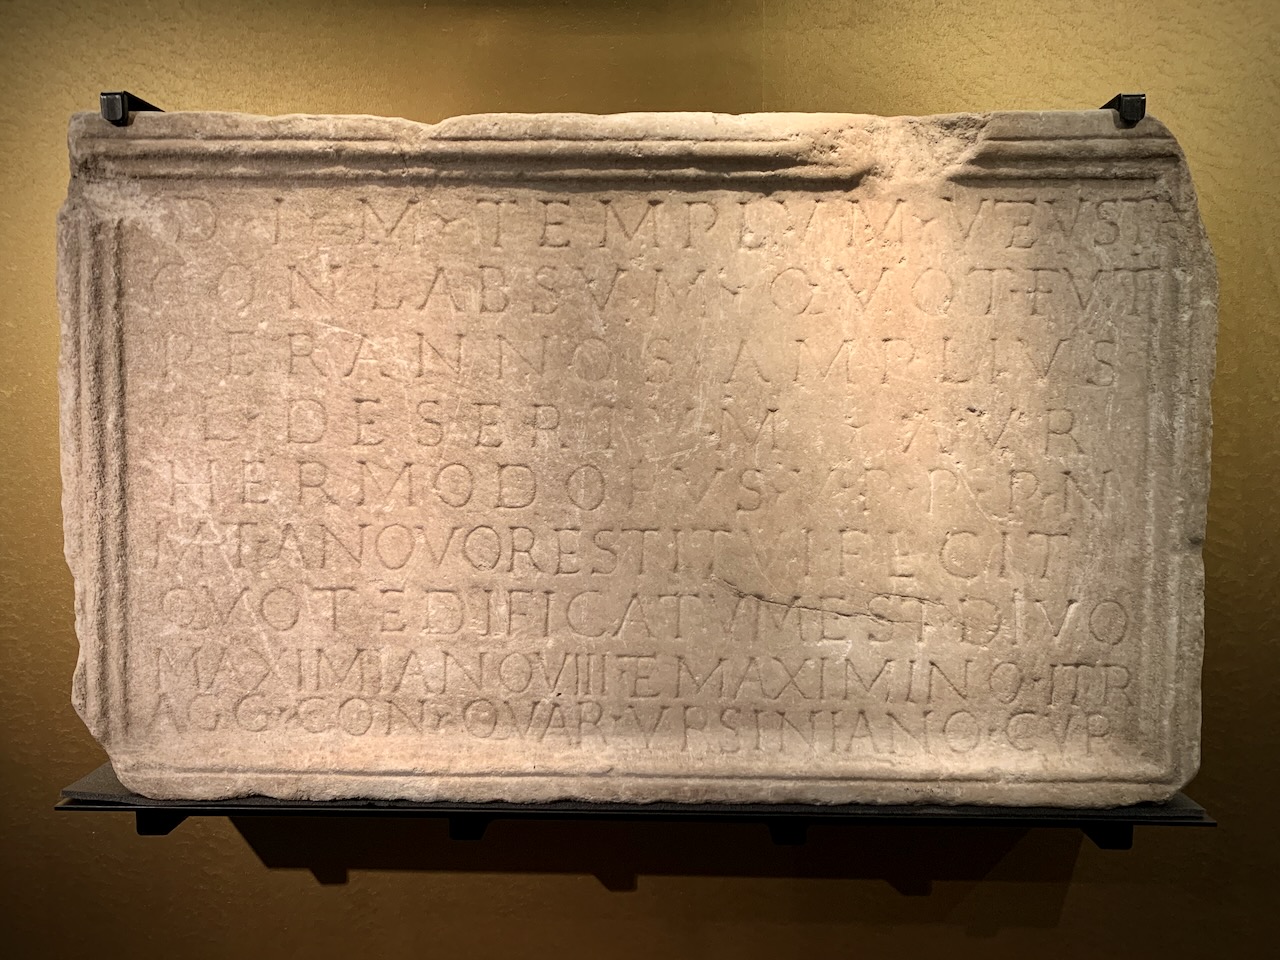 Mithraic inscription of Aurelius Hermodorus